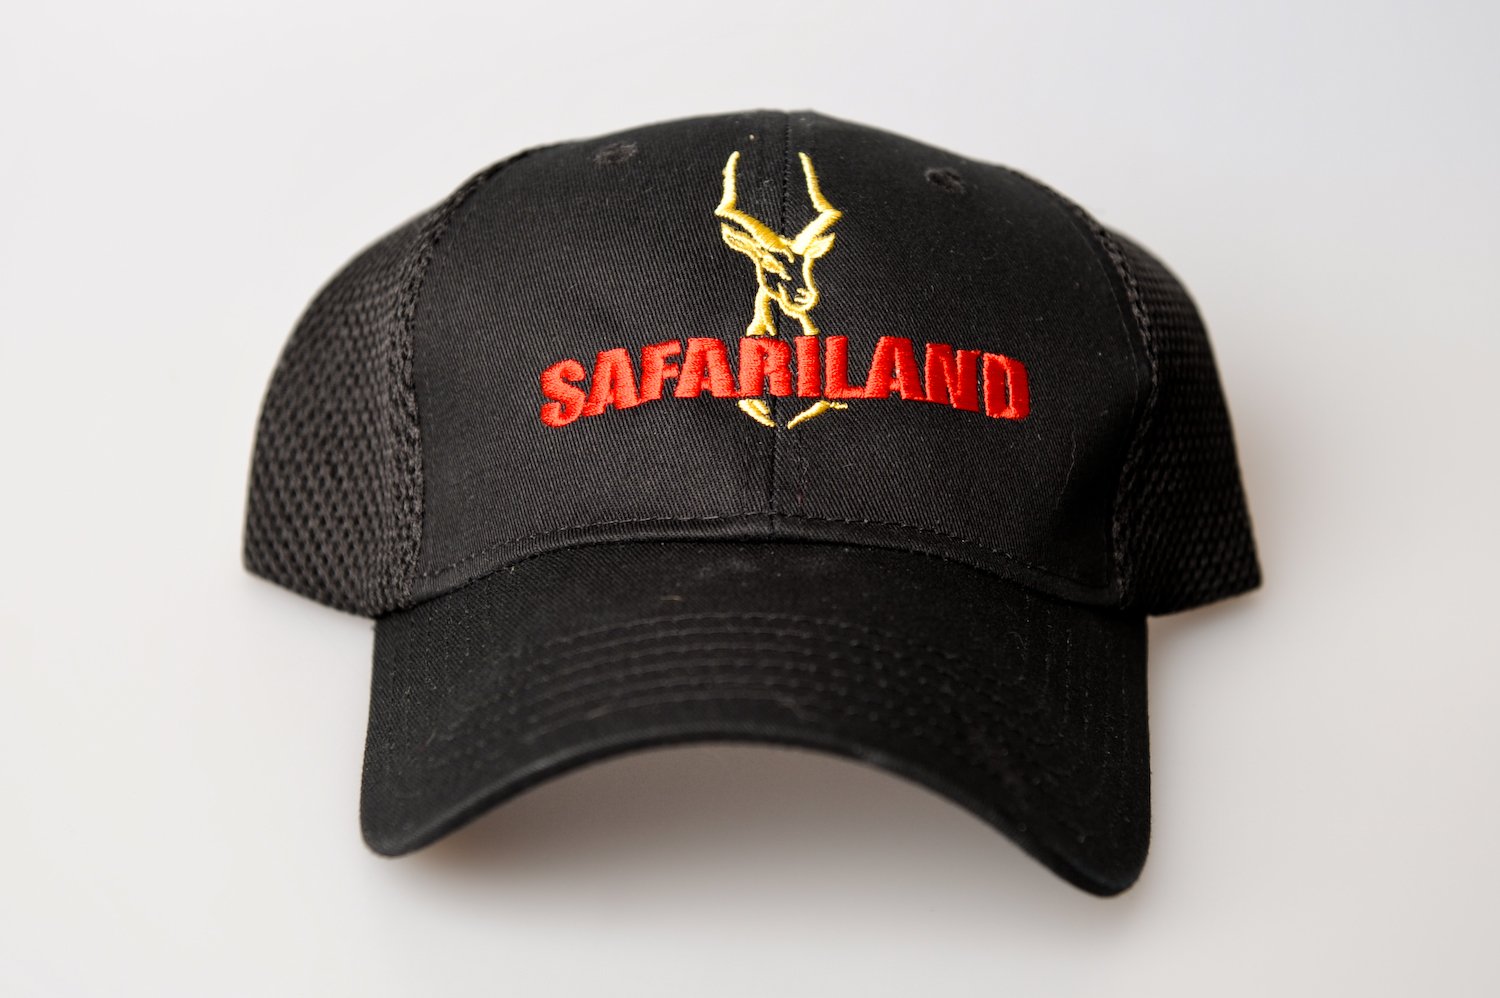 Safariland cap, Black